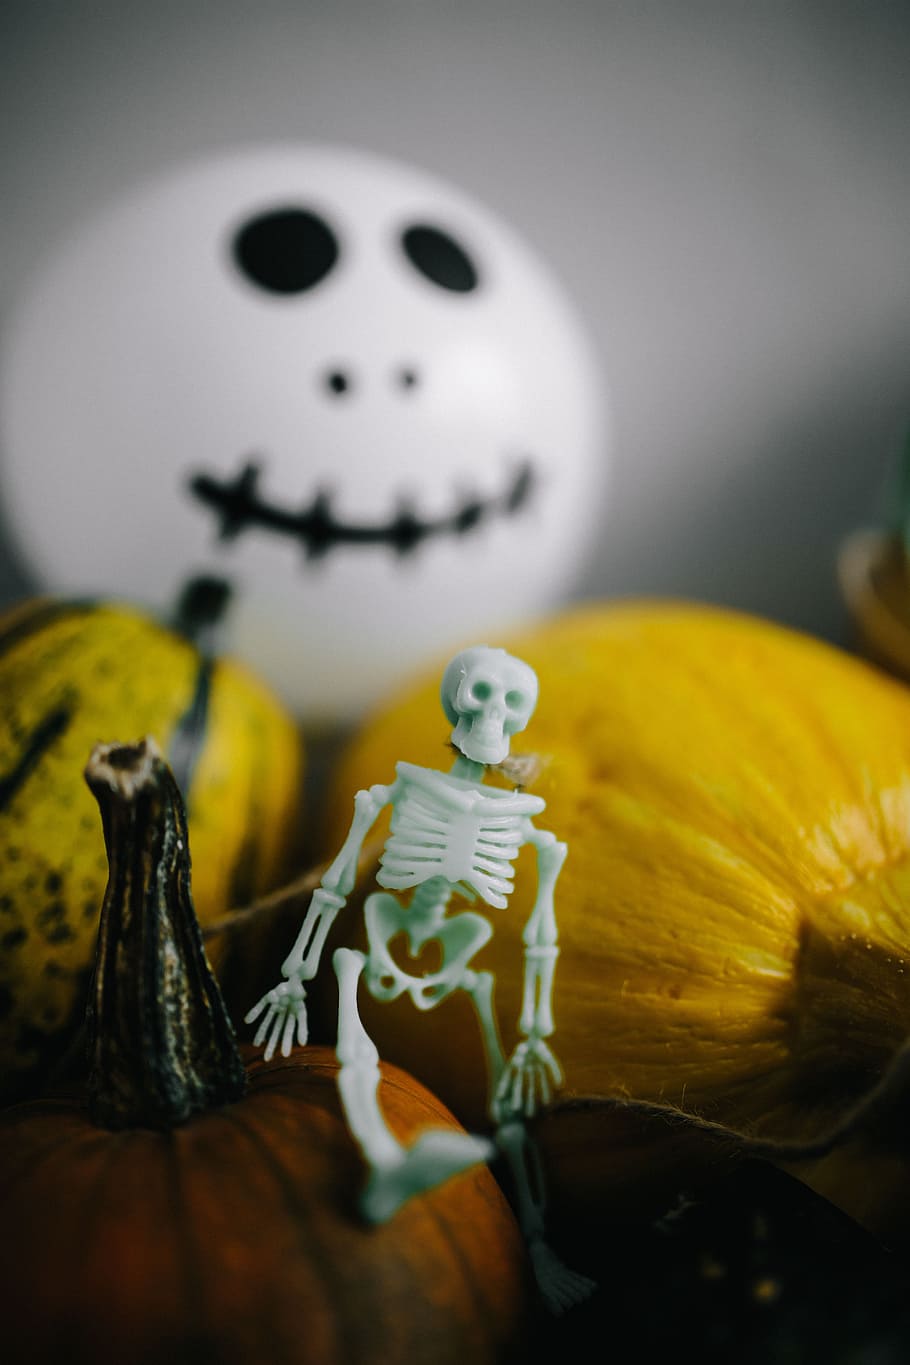 abóboras e dia das bruxas, legumes, outono, abóboras, engraçado, dia das bruxas, fantasmas, vaia, esqueleto humano, esqueleto